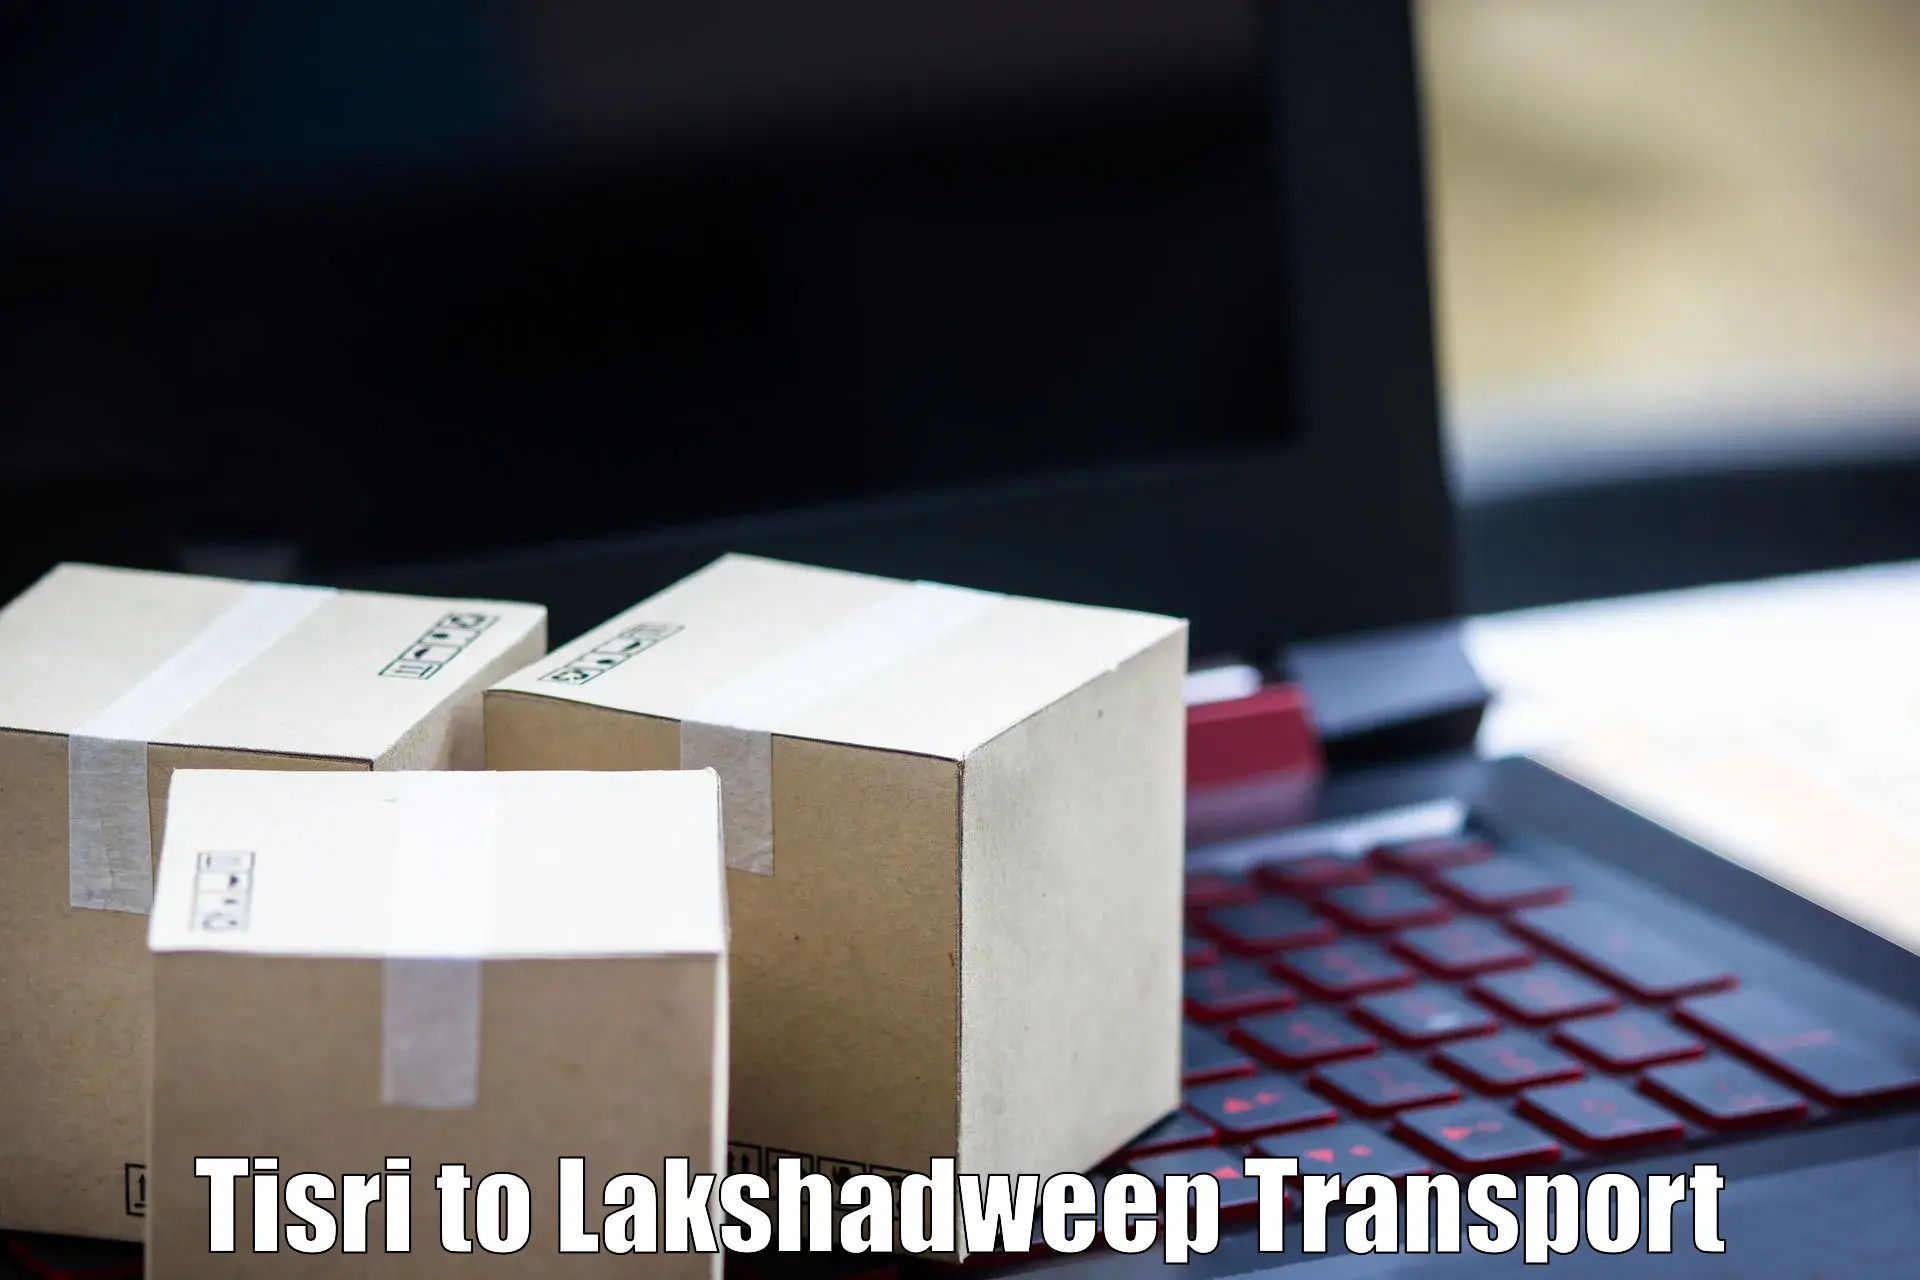 Bike transport service Tisri to Lakshadweep